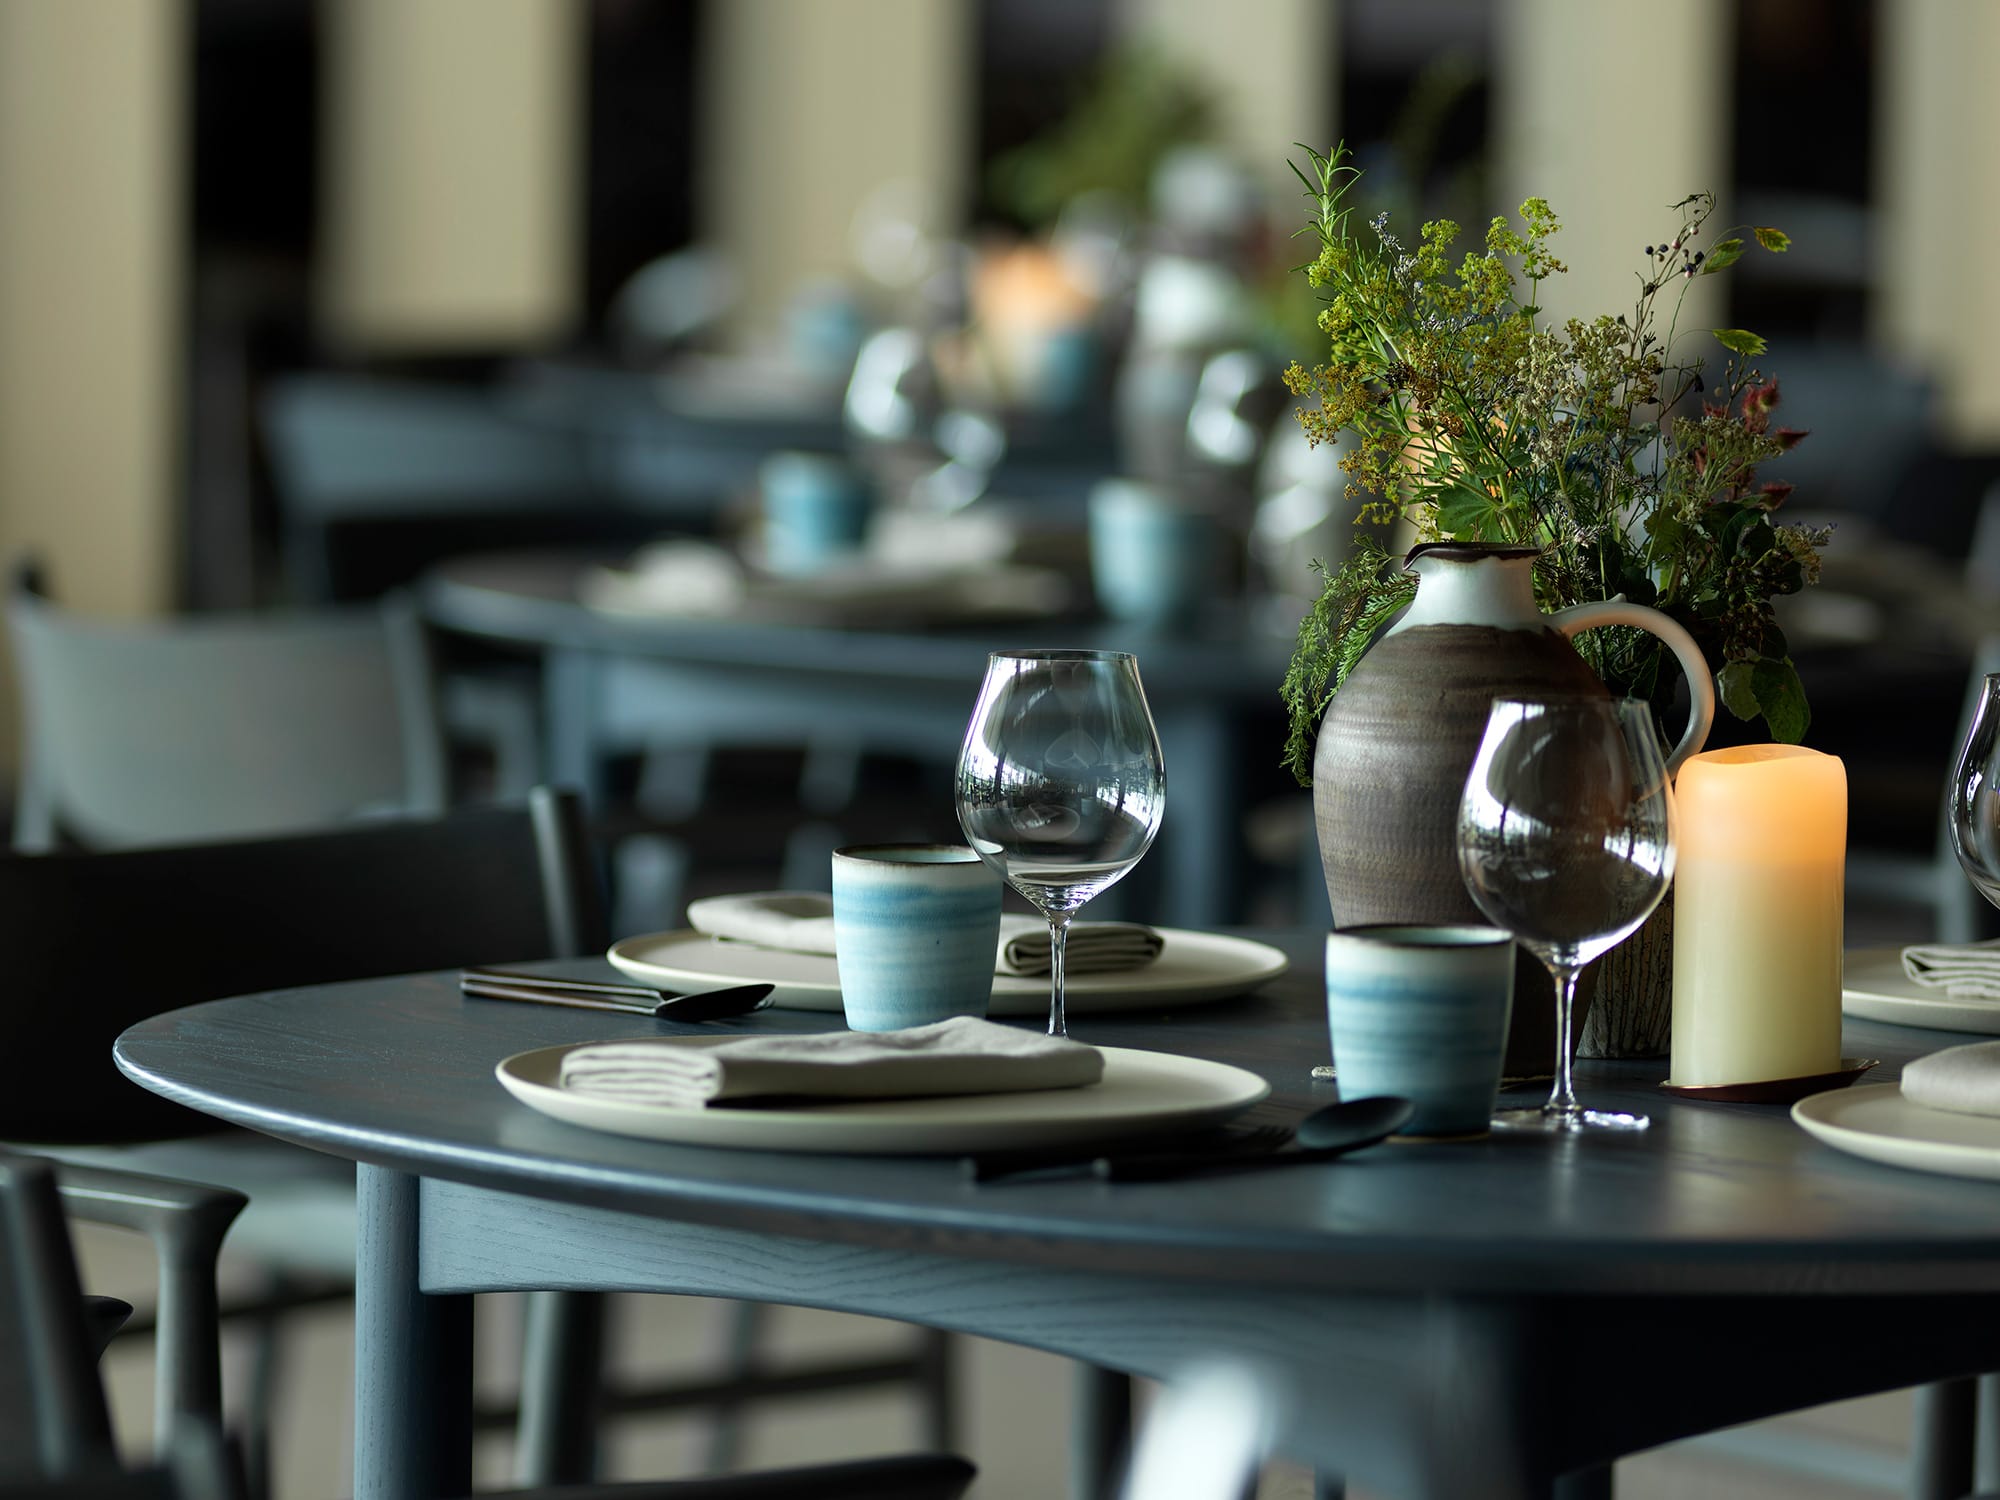 料理、テーブルウエア、活けられた草花もトータルで一体の空間となり、INUAらしさを表現している。Photography Jason Loucas